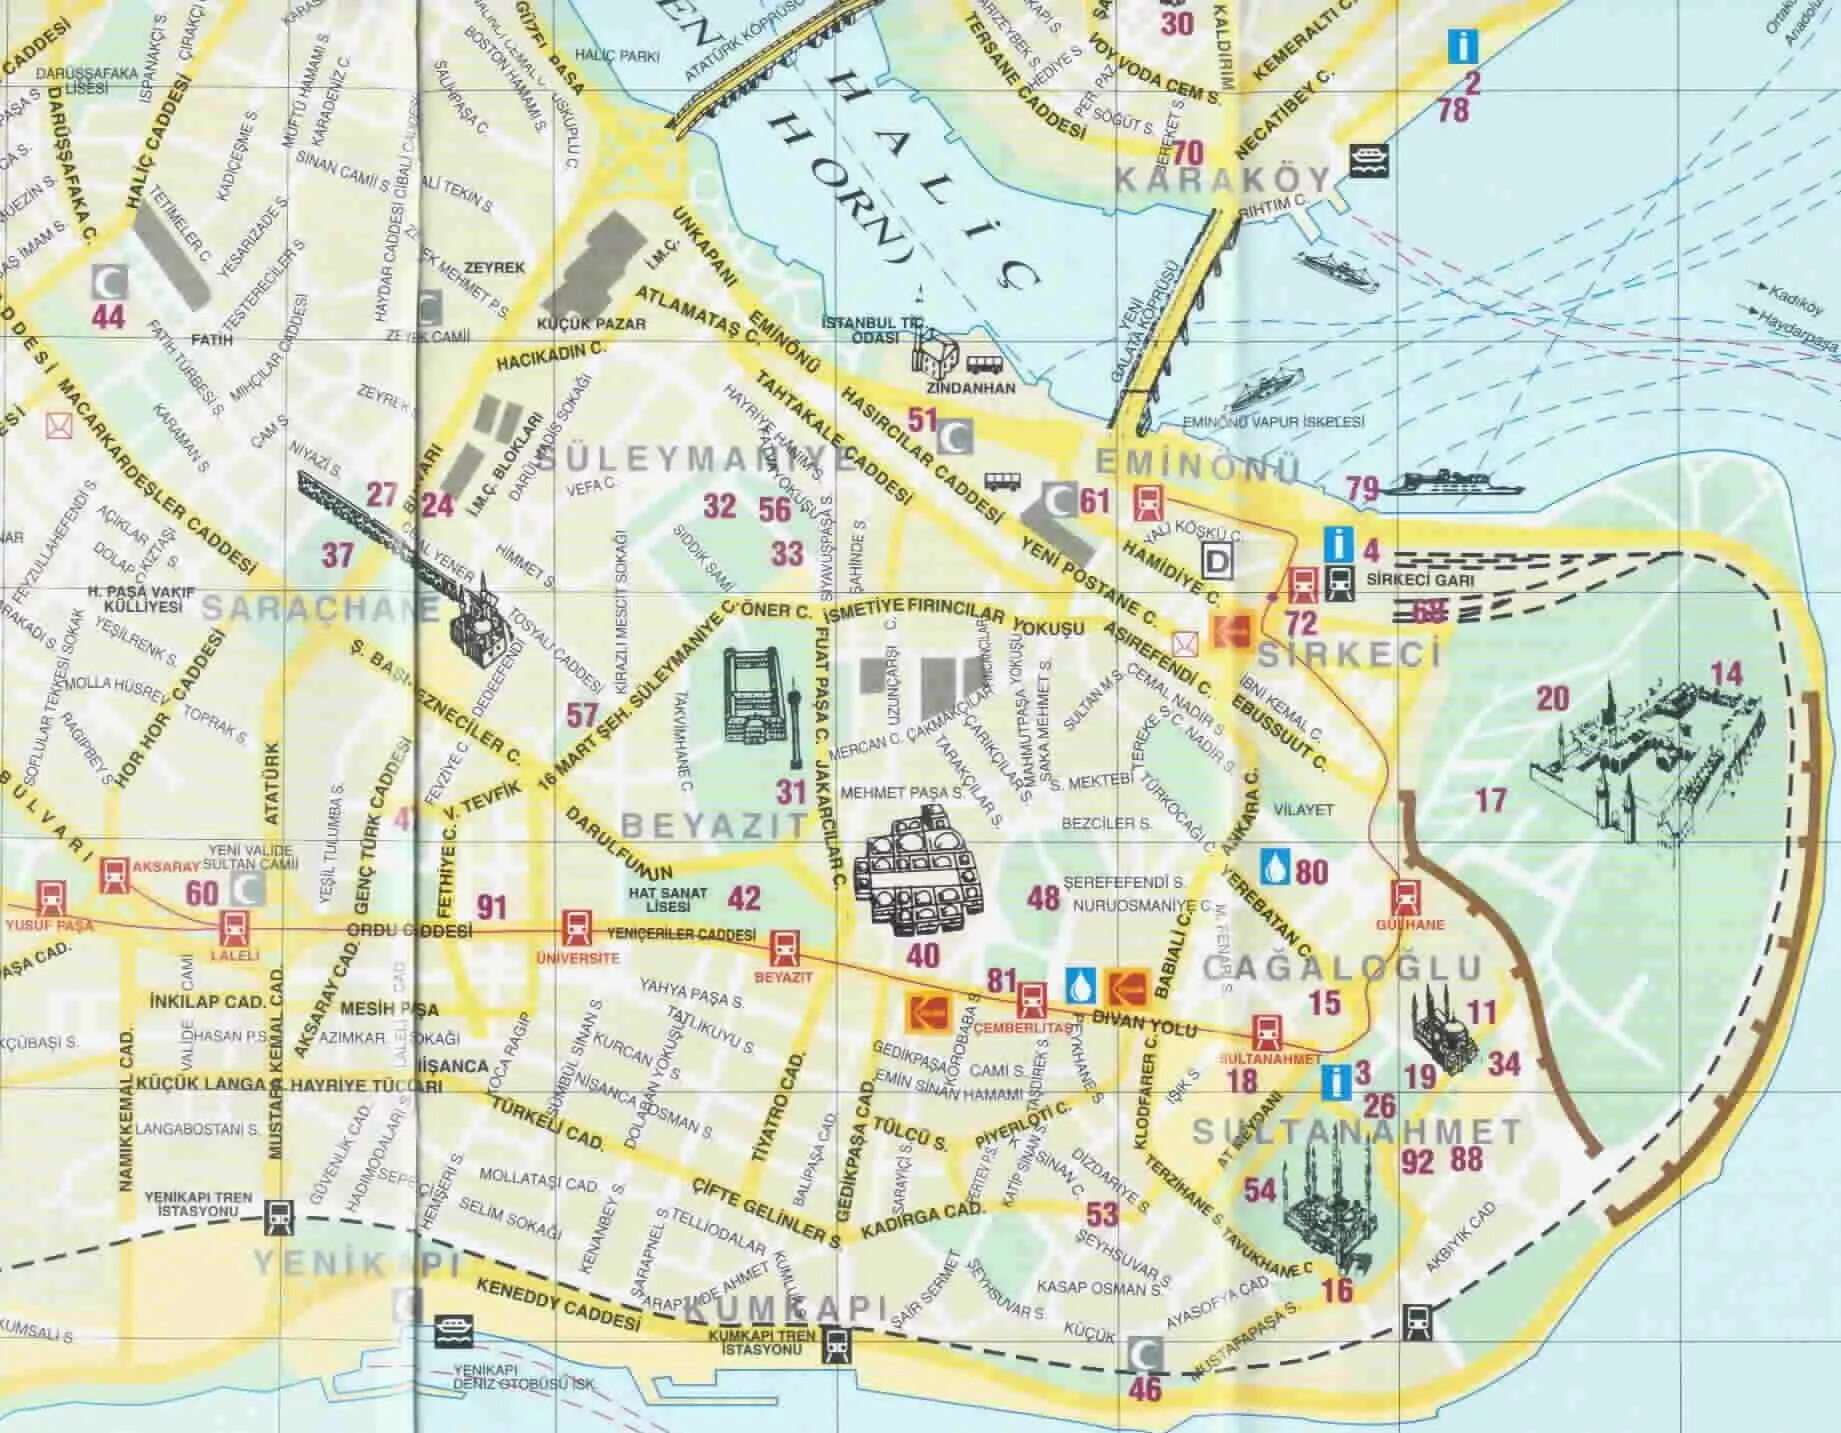 Карта стамбула. Стамбул на карте. Карта Стамбула с районами и достопримечательности. Султанахмет на карте Стамбула. Исторический центр Стамбула на карте.